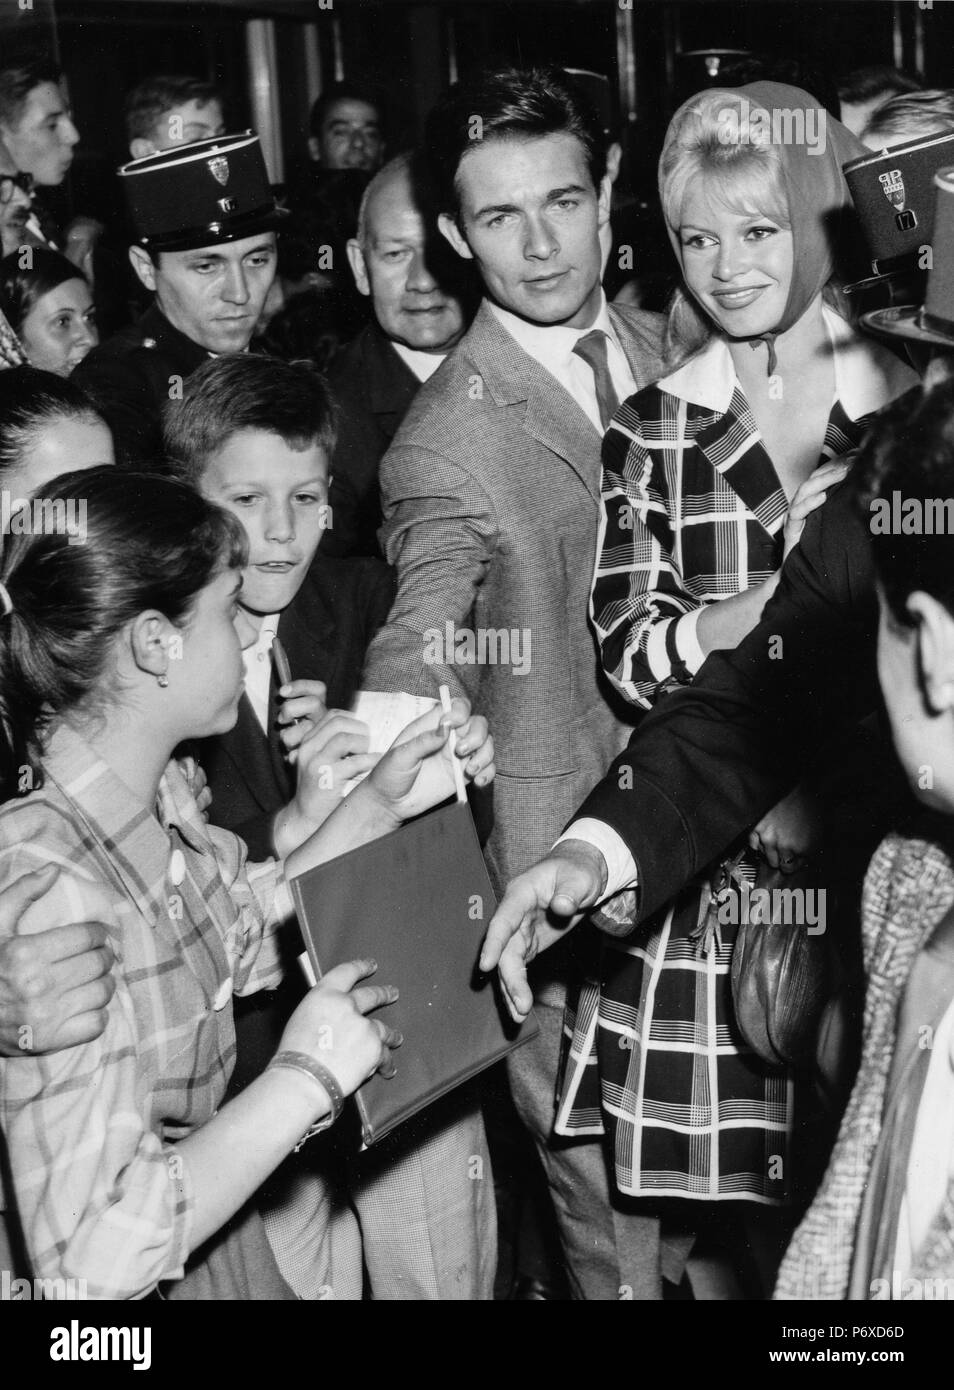 brigitte bardot, jacques charrier, paris 1959 Stock Photo